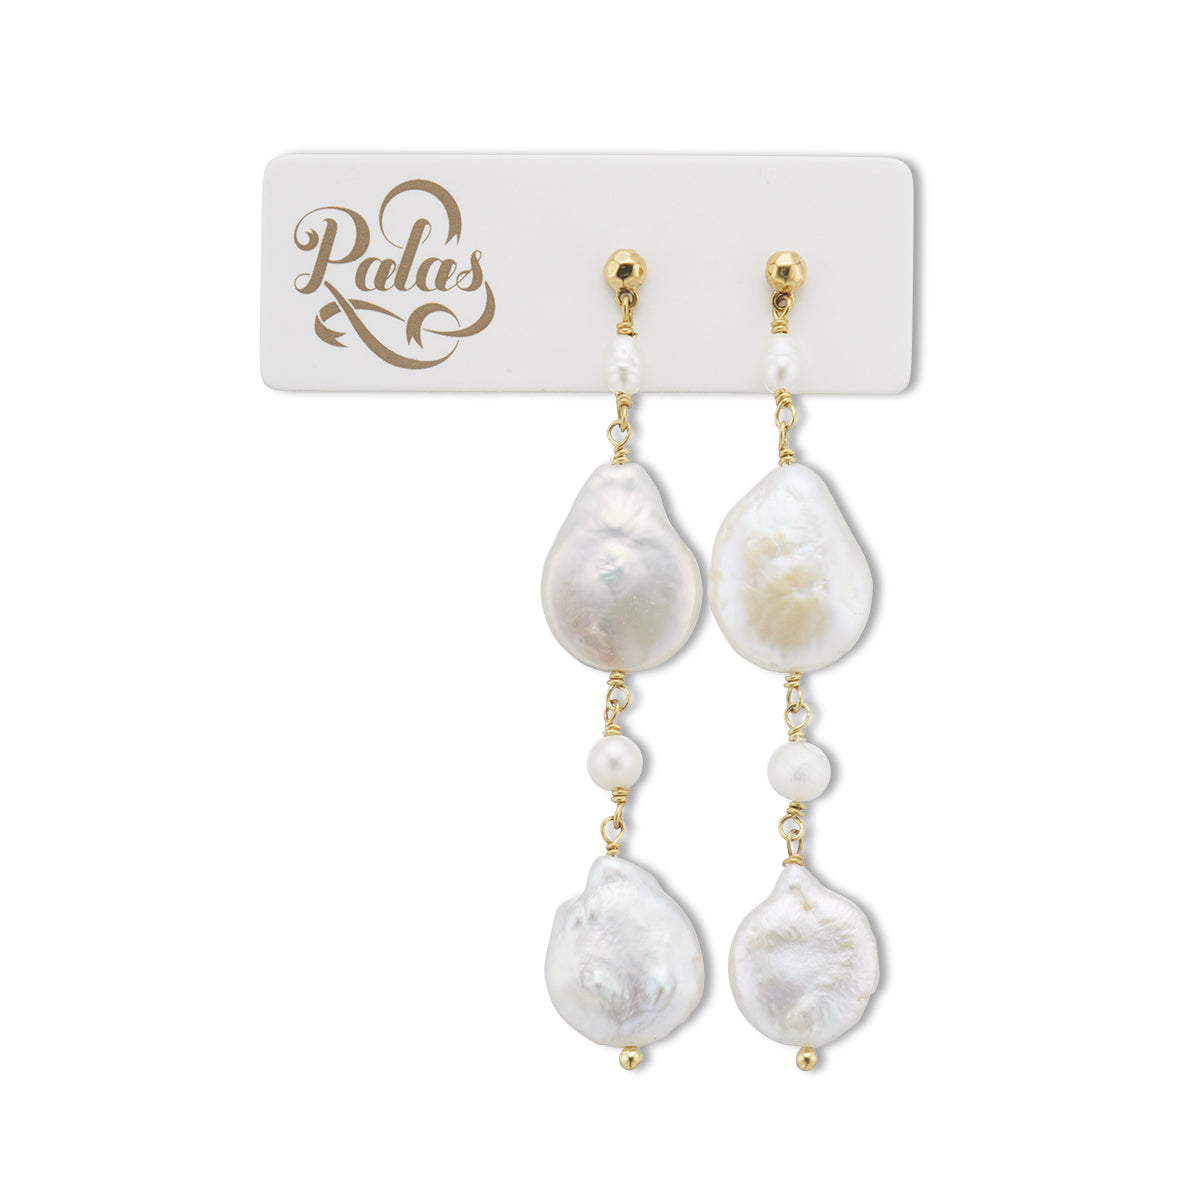 Seychelles baroque pearl drop earrings